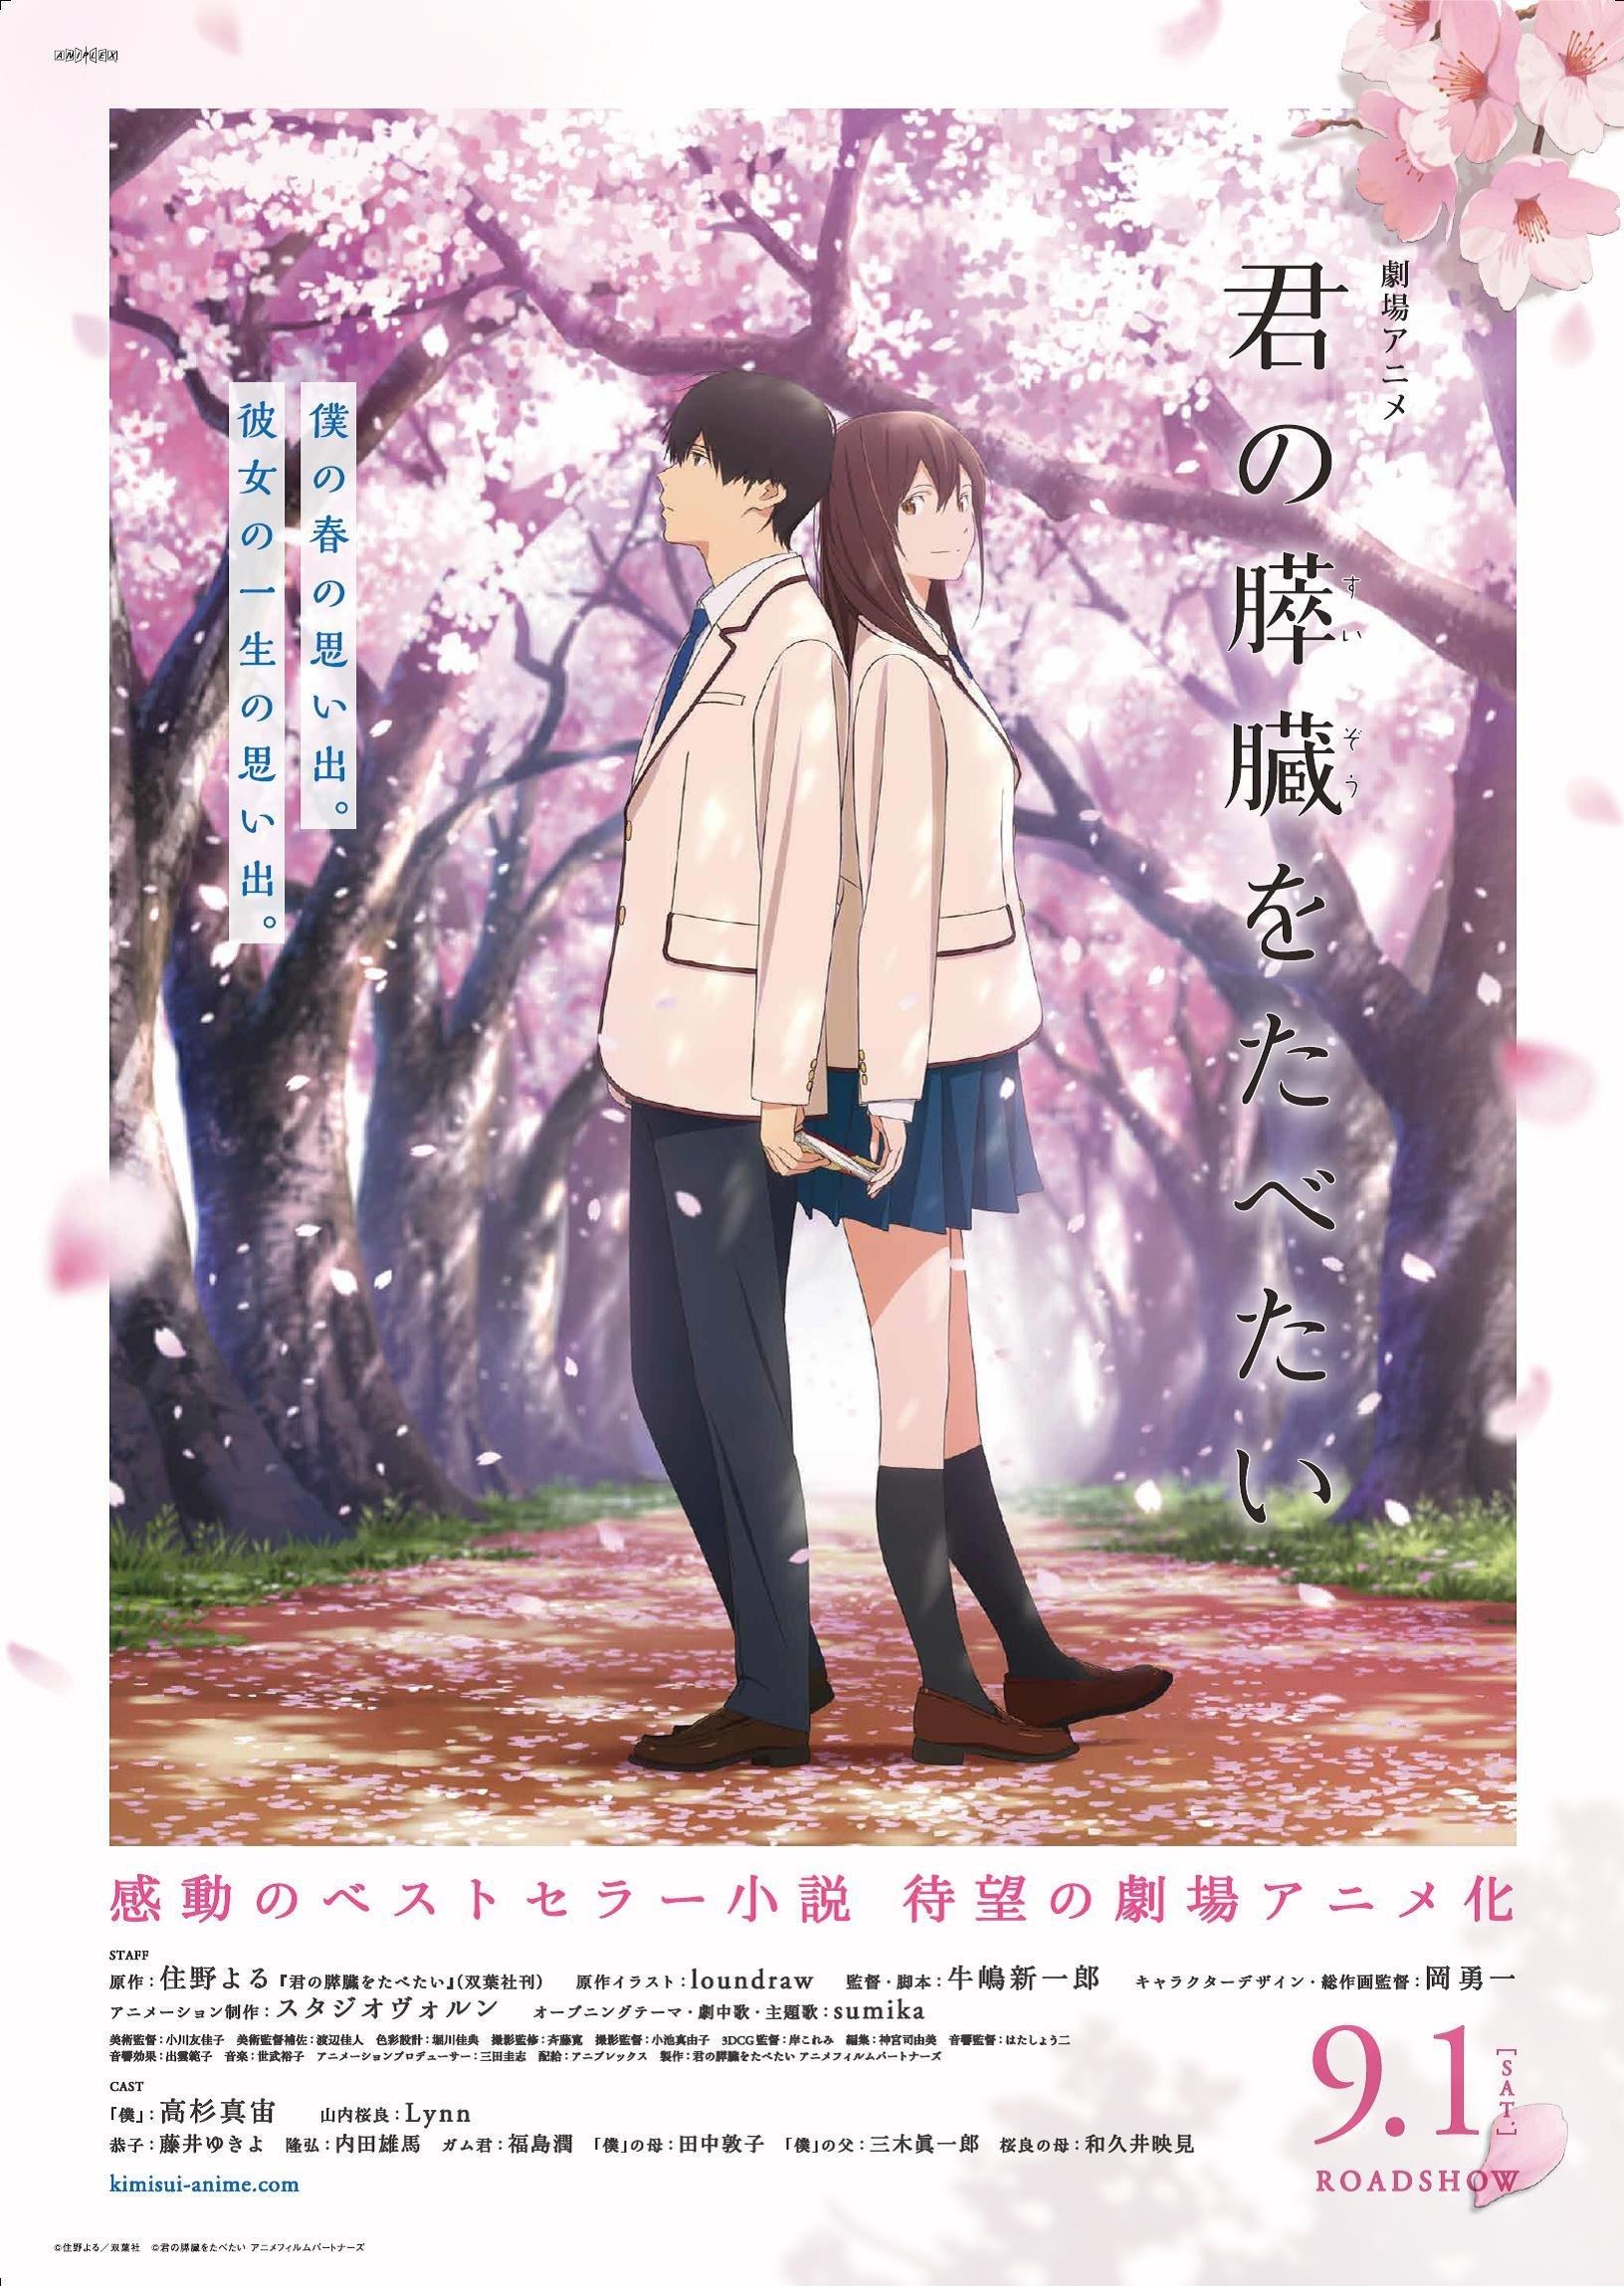 Mega Sized Movie Poster Image for Kimi no suizô o tabetai 